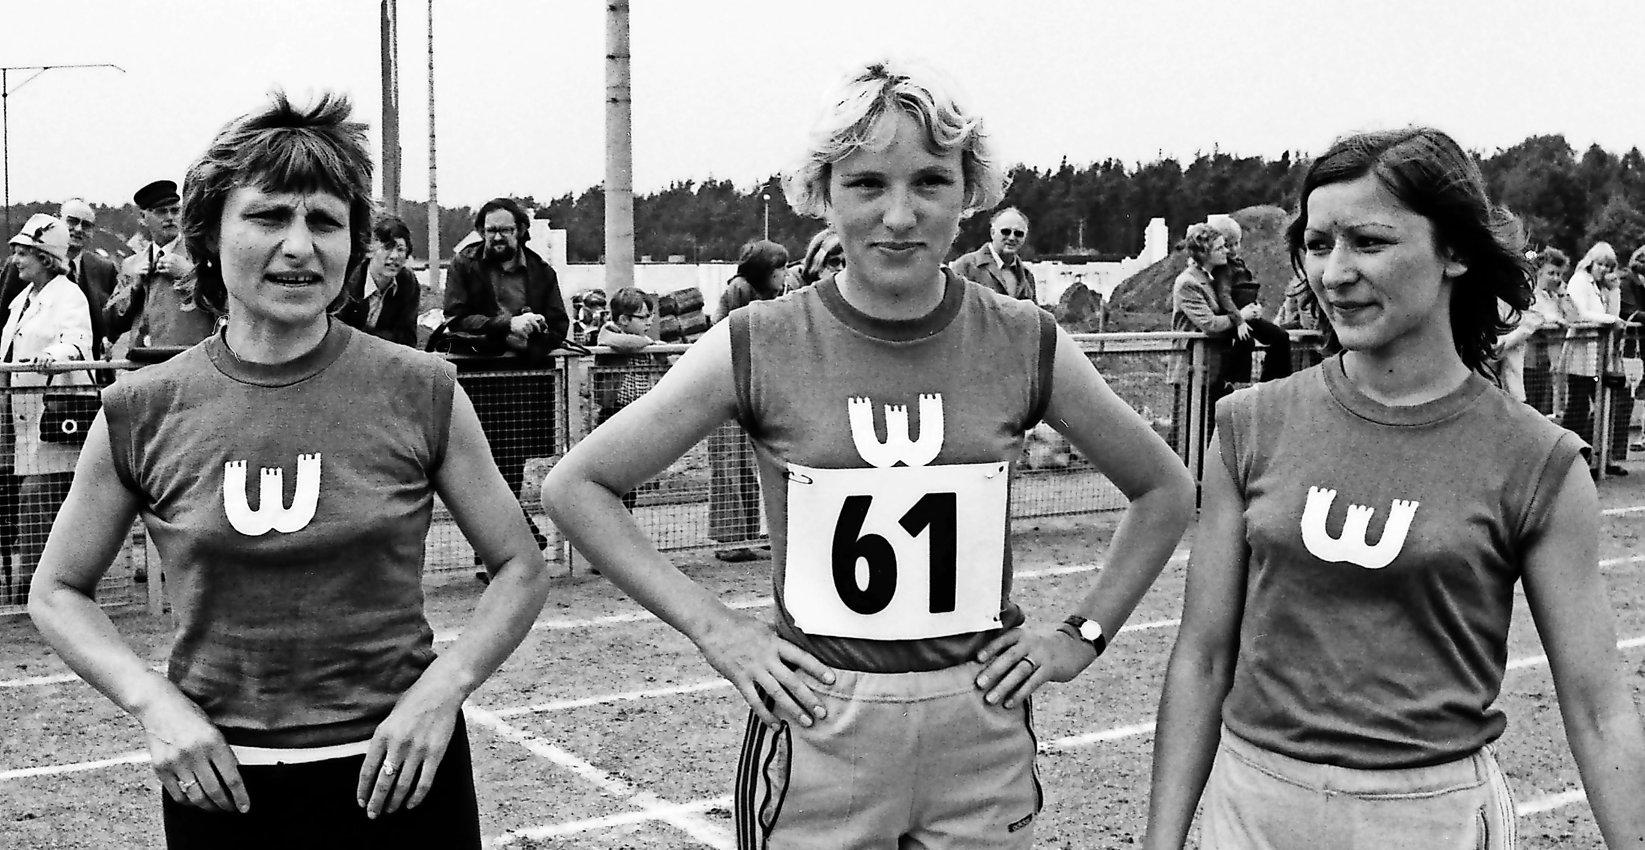 VfLerinnen auf der Bahn: Hildegard Falck beim Leichtathletikabend 1973 in der Kreuzheide